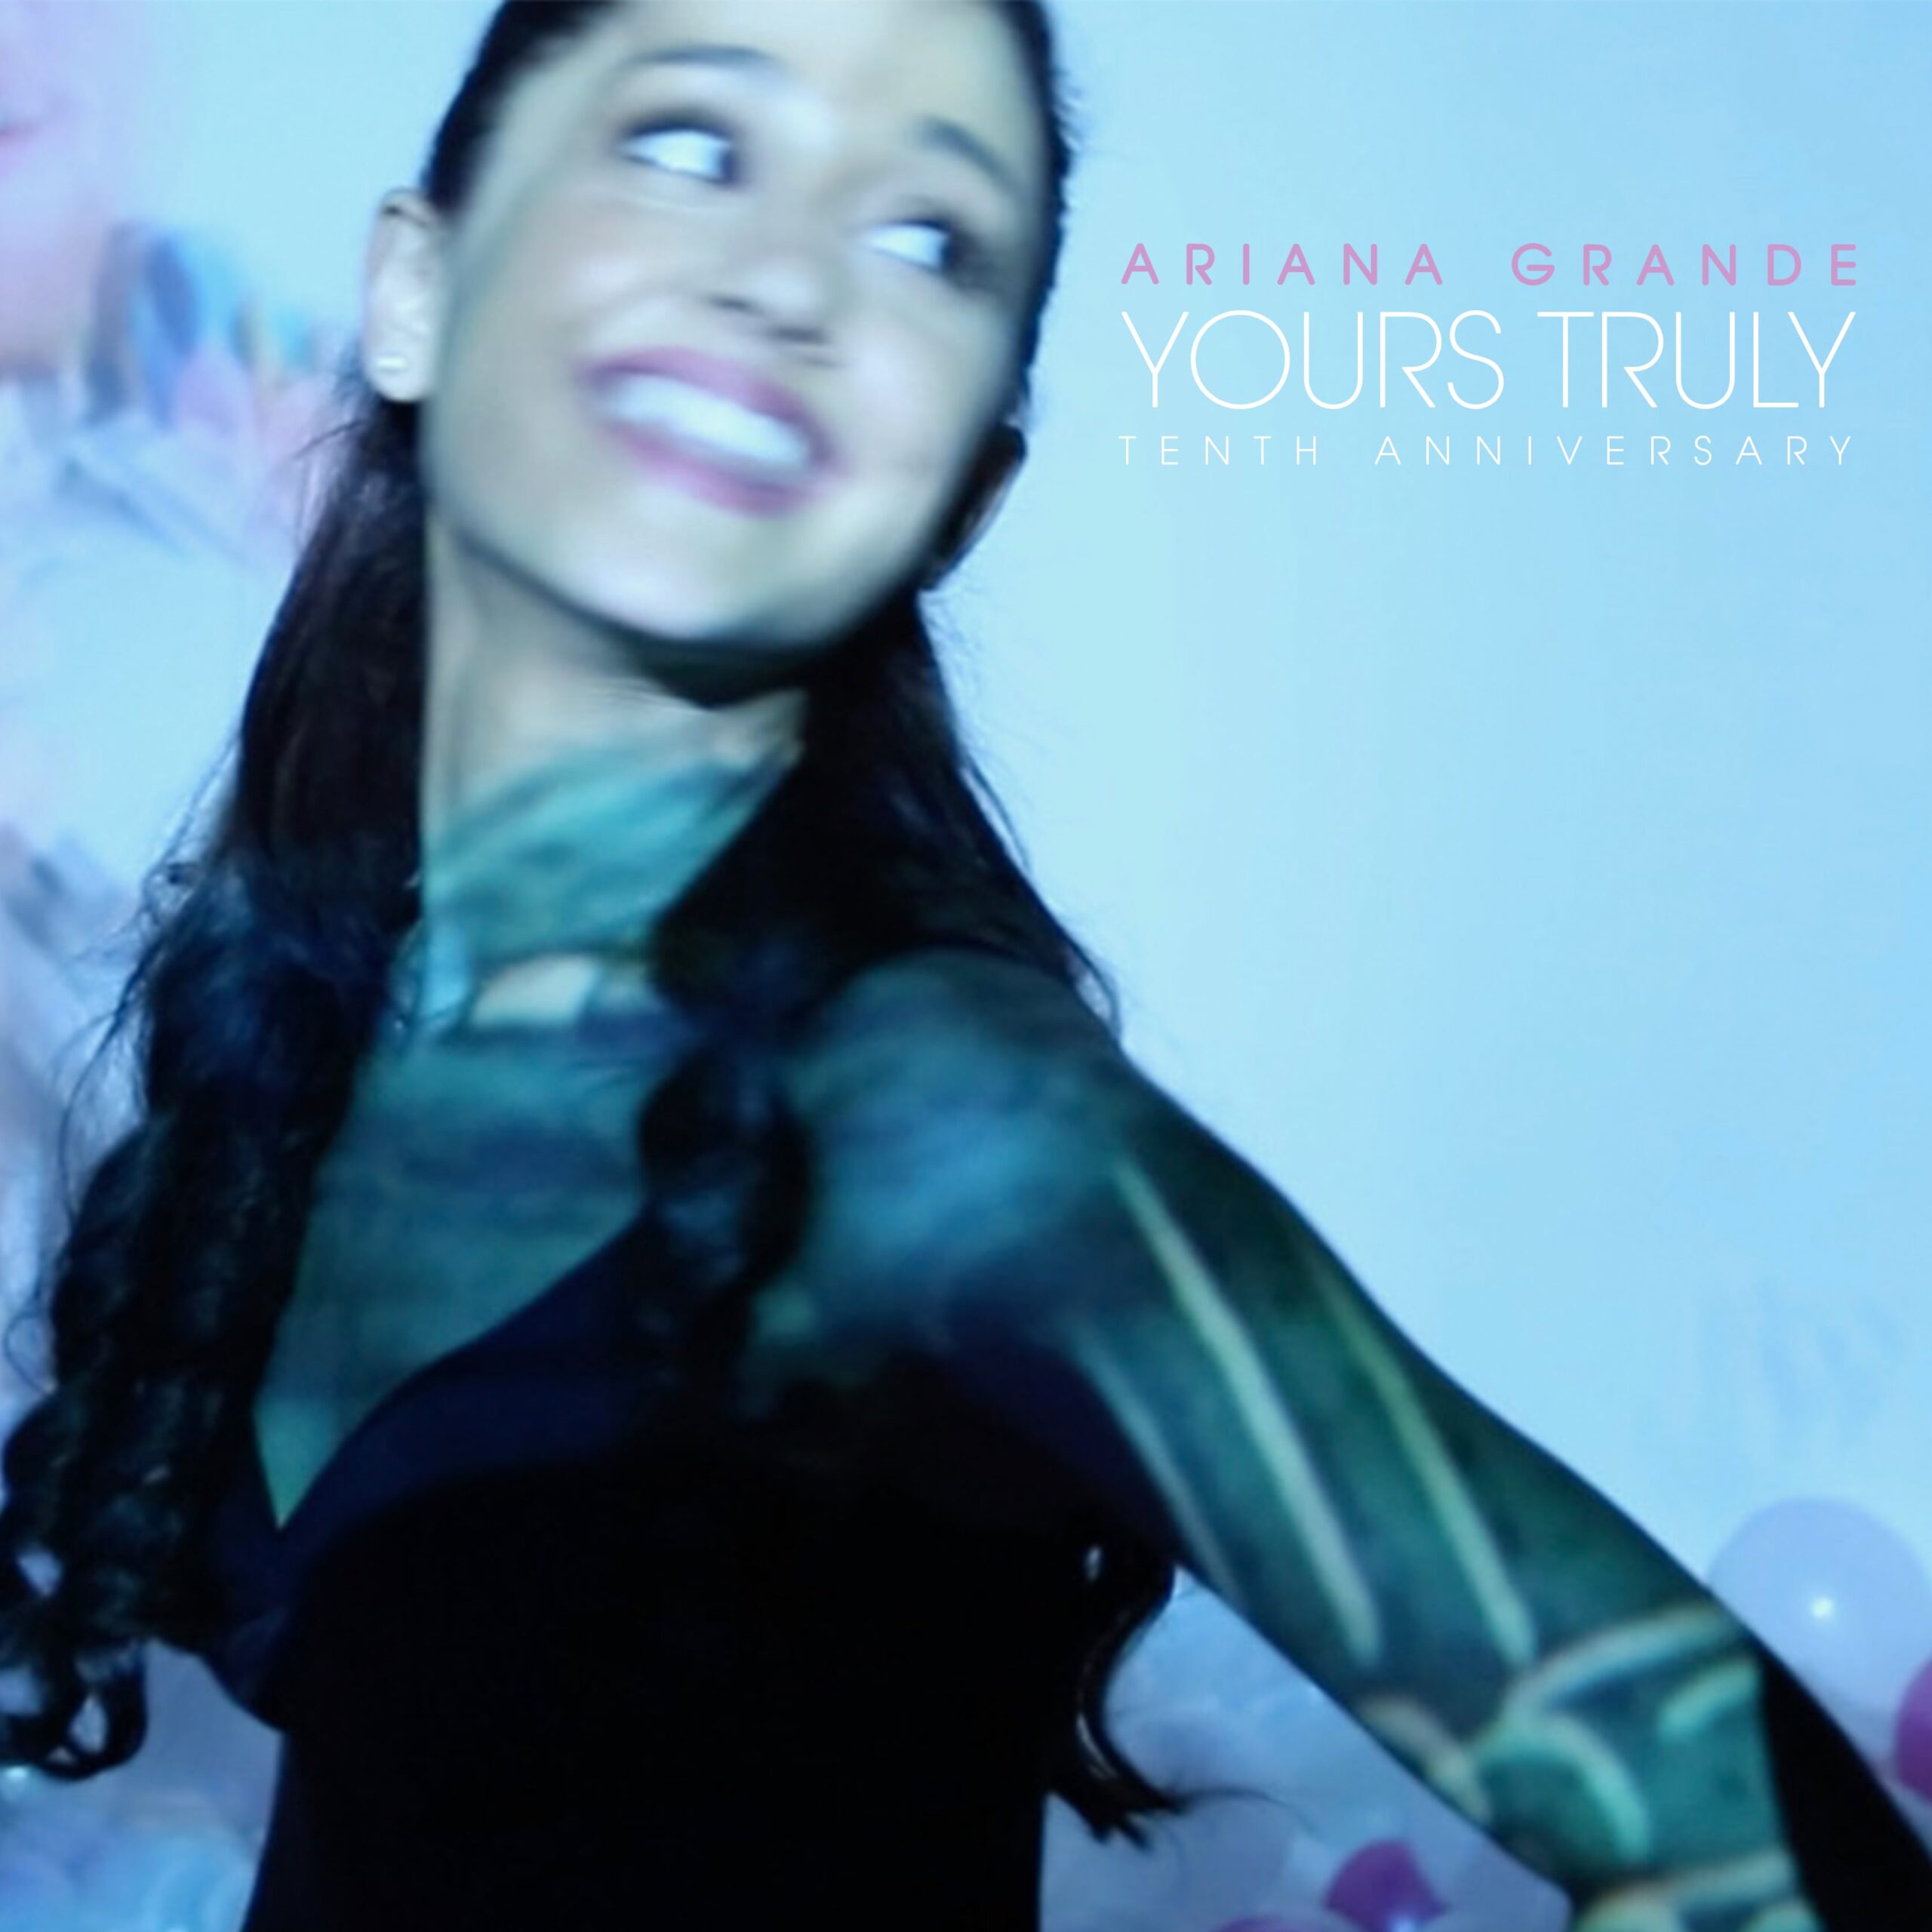 Ariana Grande – In occasione del Decimo Anniversario pubblica oggi in digitale Yours Truly 